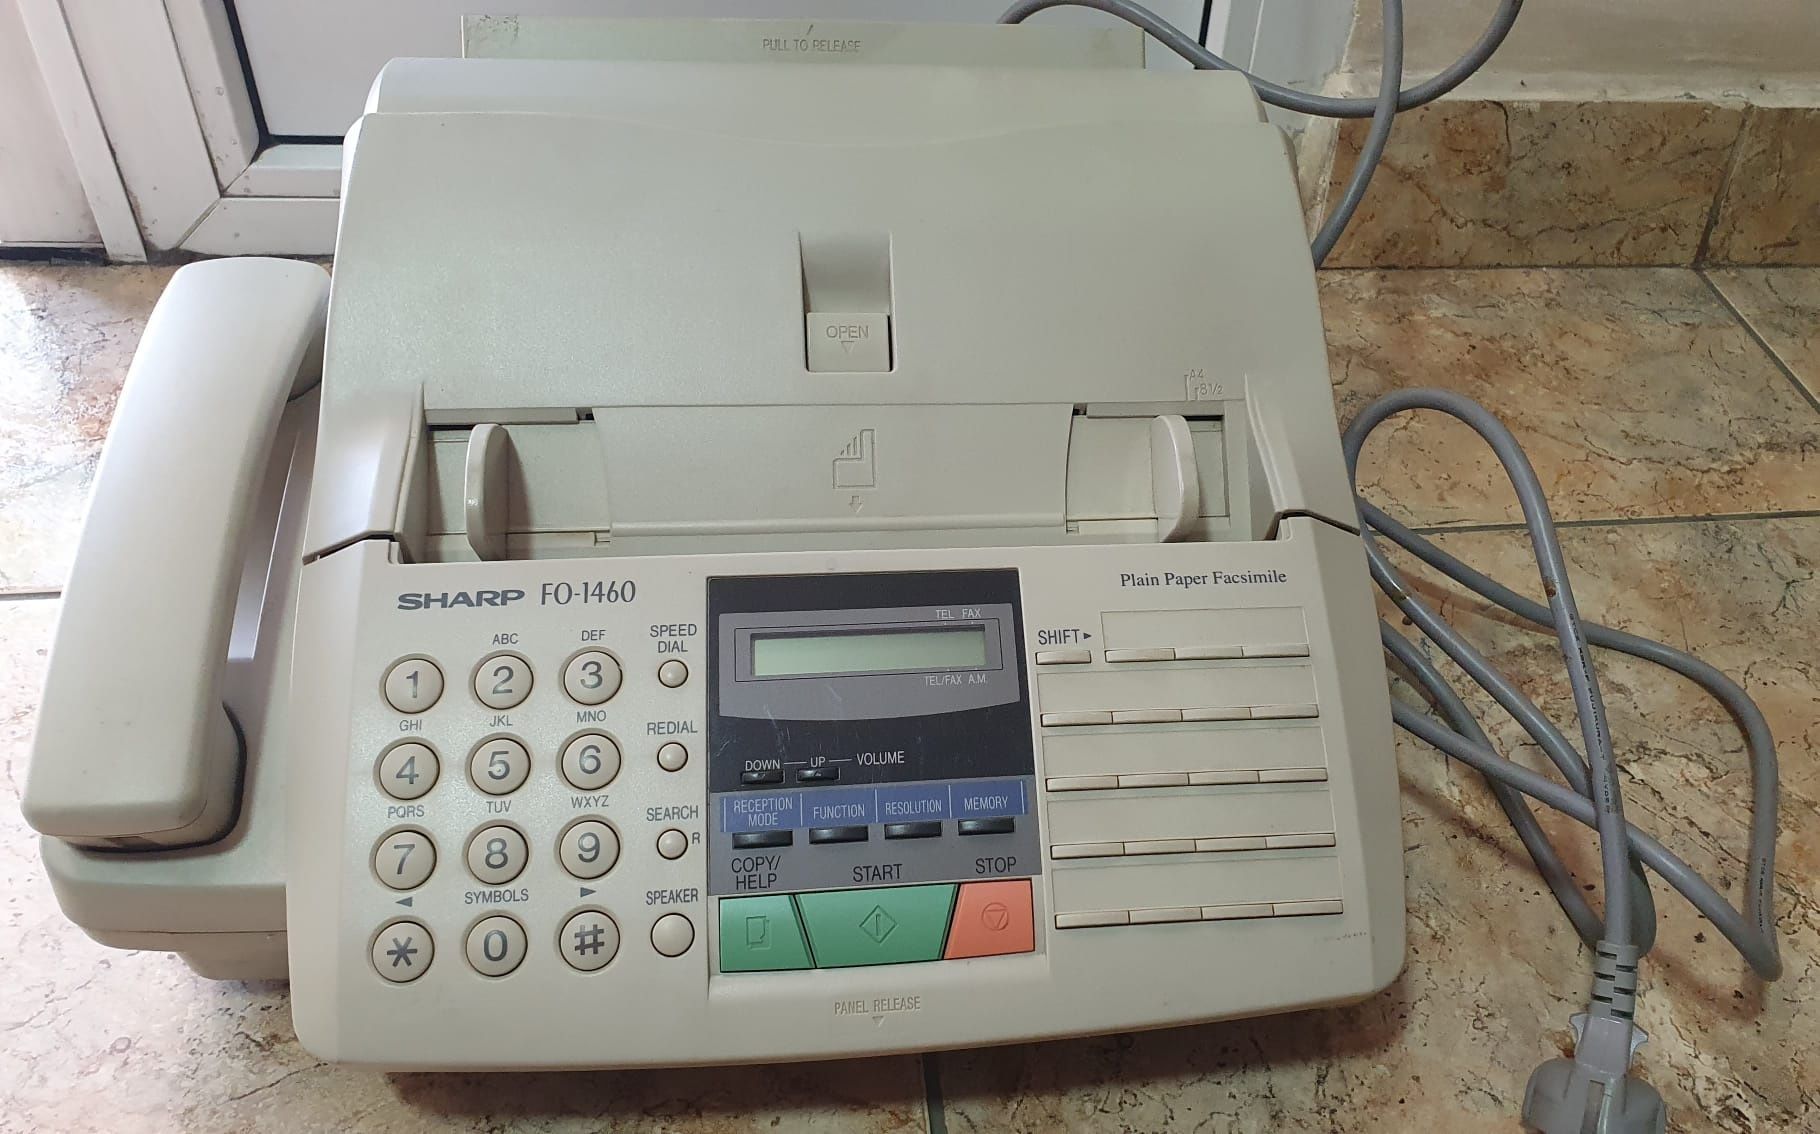 Vand telefon fix cu fax NOU